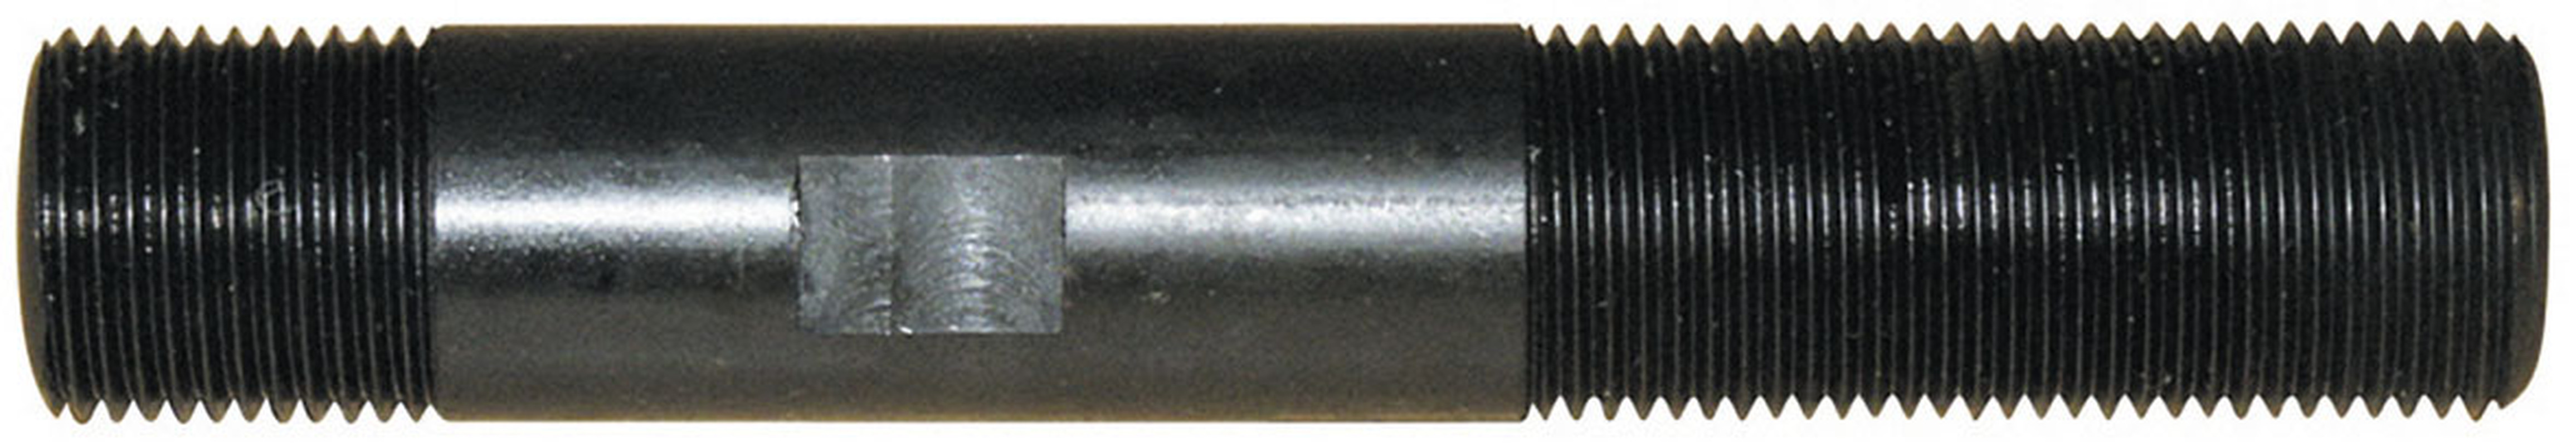 ALFRA Hydraulikschraube 19,0 mm